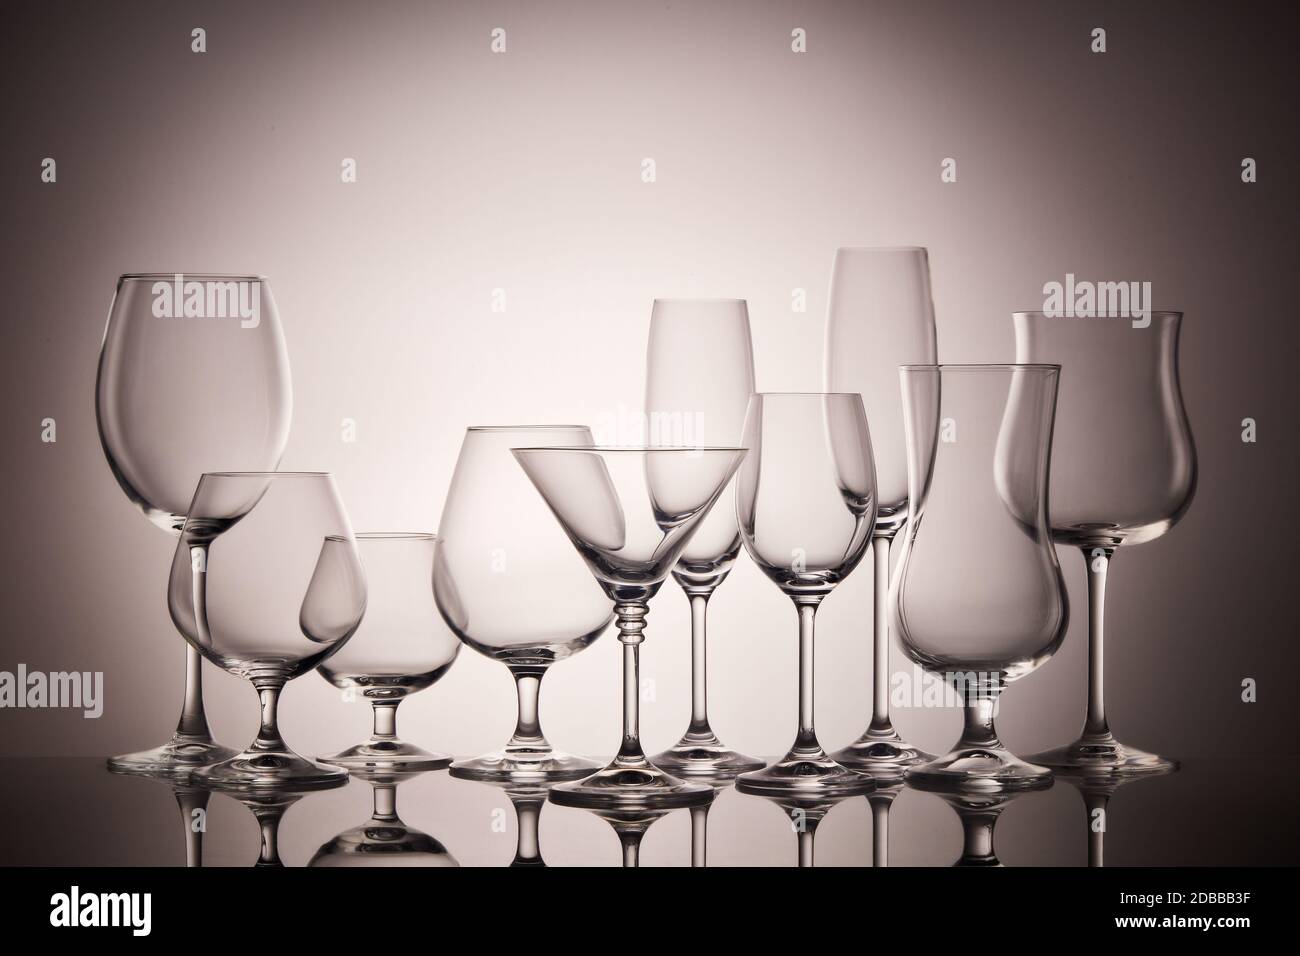 Set Gläser für verschiedene alkoholische Getränke und Cocktails auf dunkelgrauem Hintergrund. Leeren Sie klare Gläser. Stockfoto